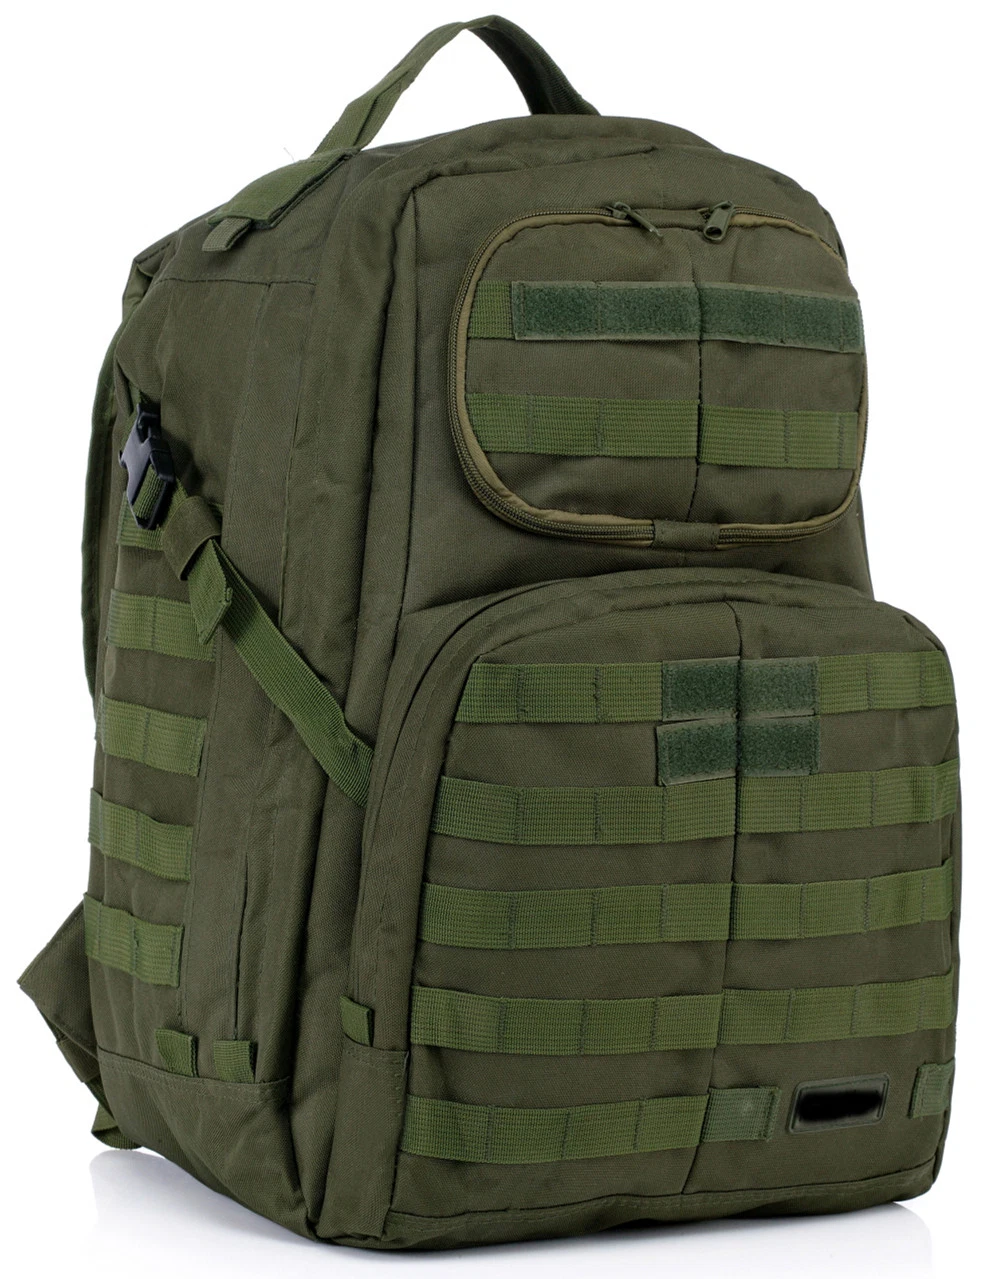 Esdy Backpacks sacs à dos pour randonnée en plein air Camping randonnée chasse